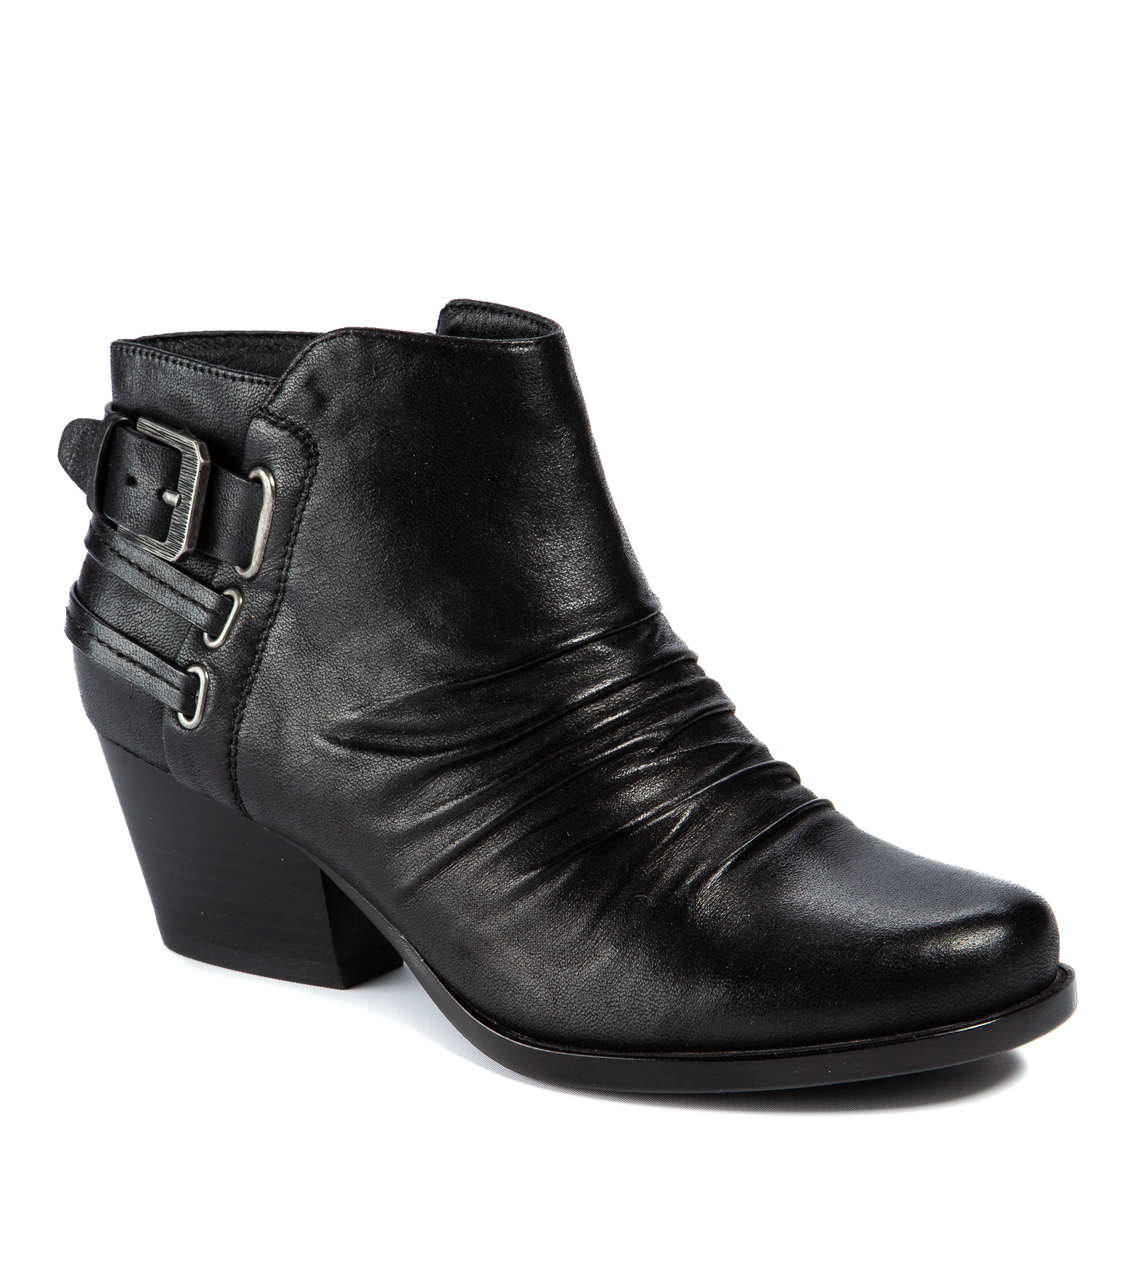 Baretraps REID Women's Boots Black Size 9.5 M (BT26844) | eBay